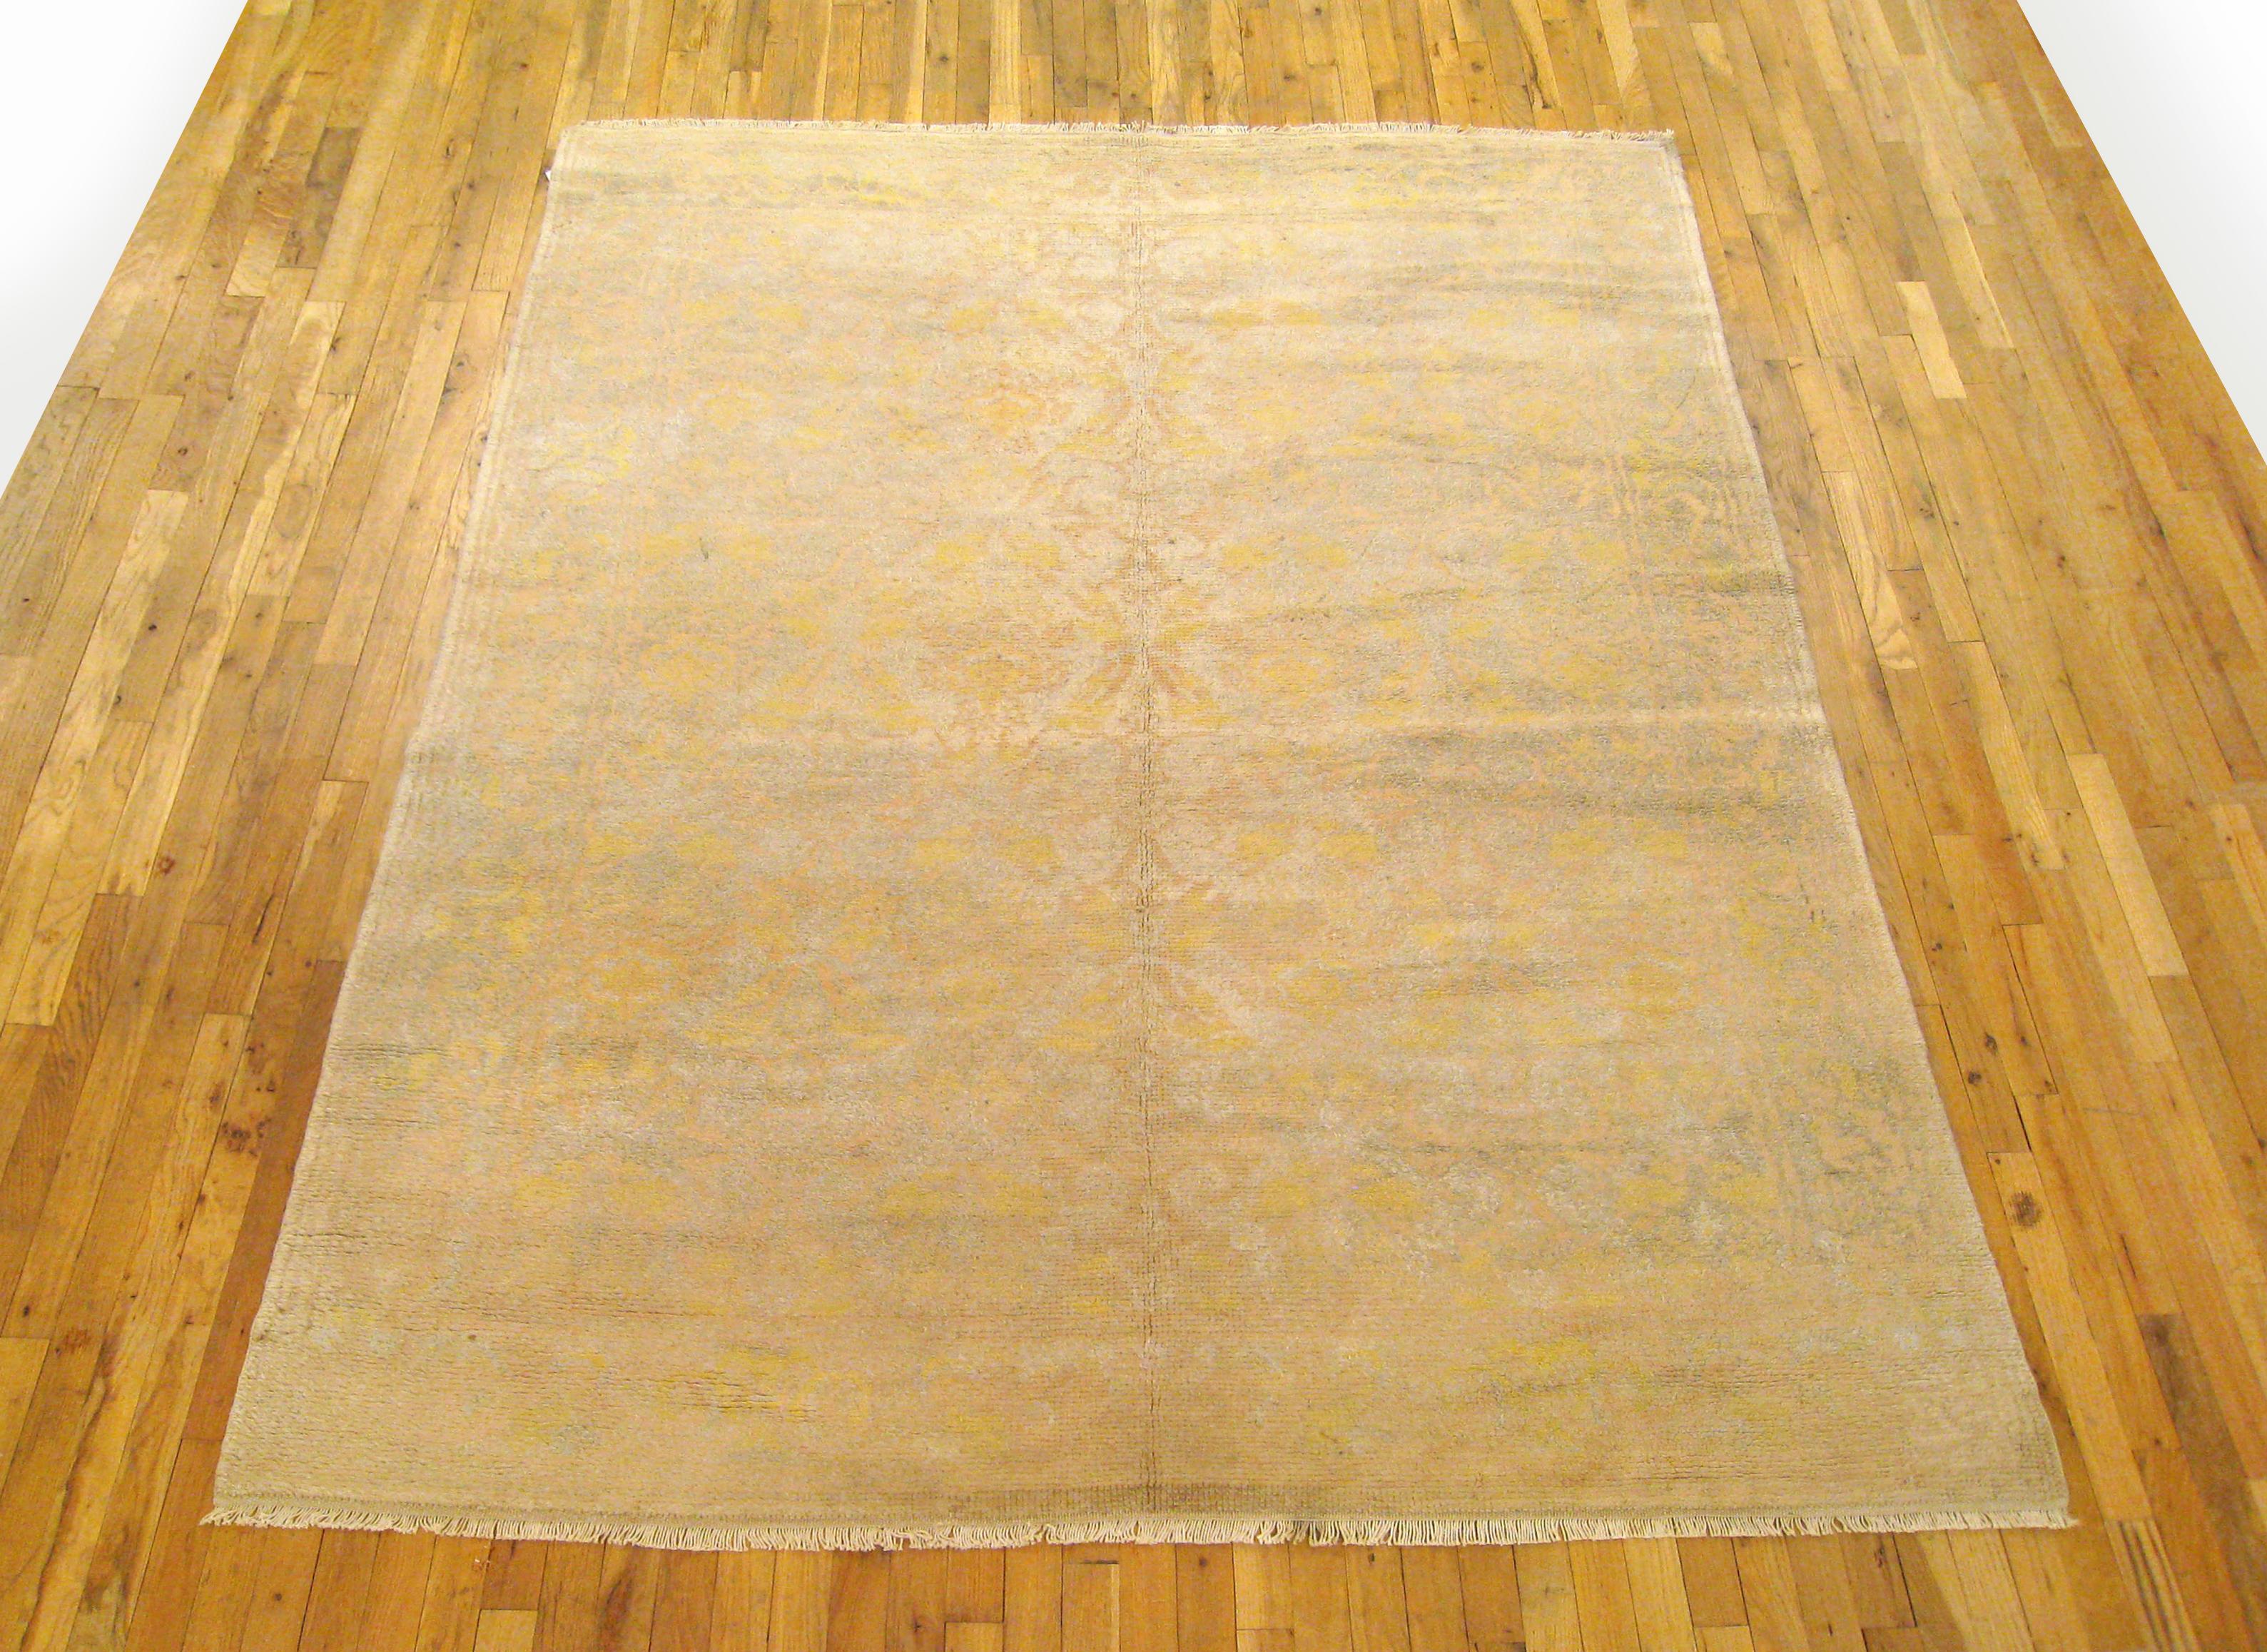 Vintage By Spanisch  Teppich, Zimmergröße, um 1940

Ein einzigartiger spanischer Vintage-Teppich, handgeknüpft mit kurzem Wollflor. Dieser schöne Teppich zeichnet sich durch ein sich wiederholendes und kompliziertes Muster auf dem grauen Grundfeld